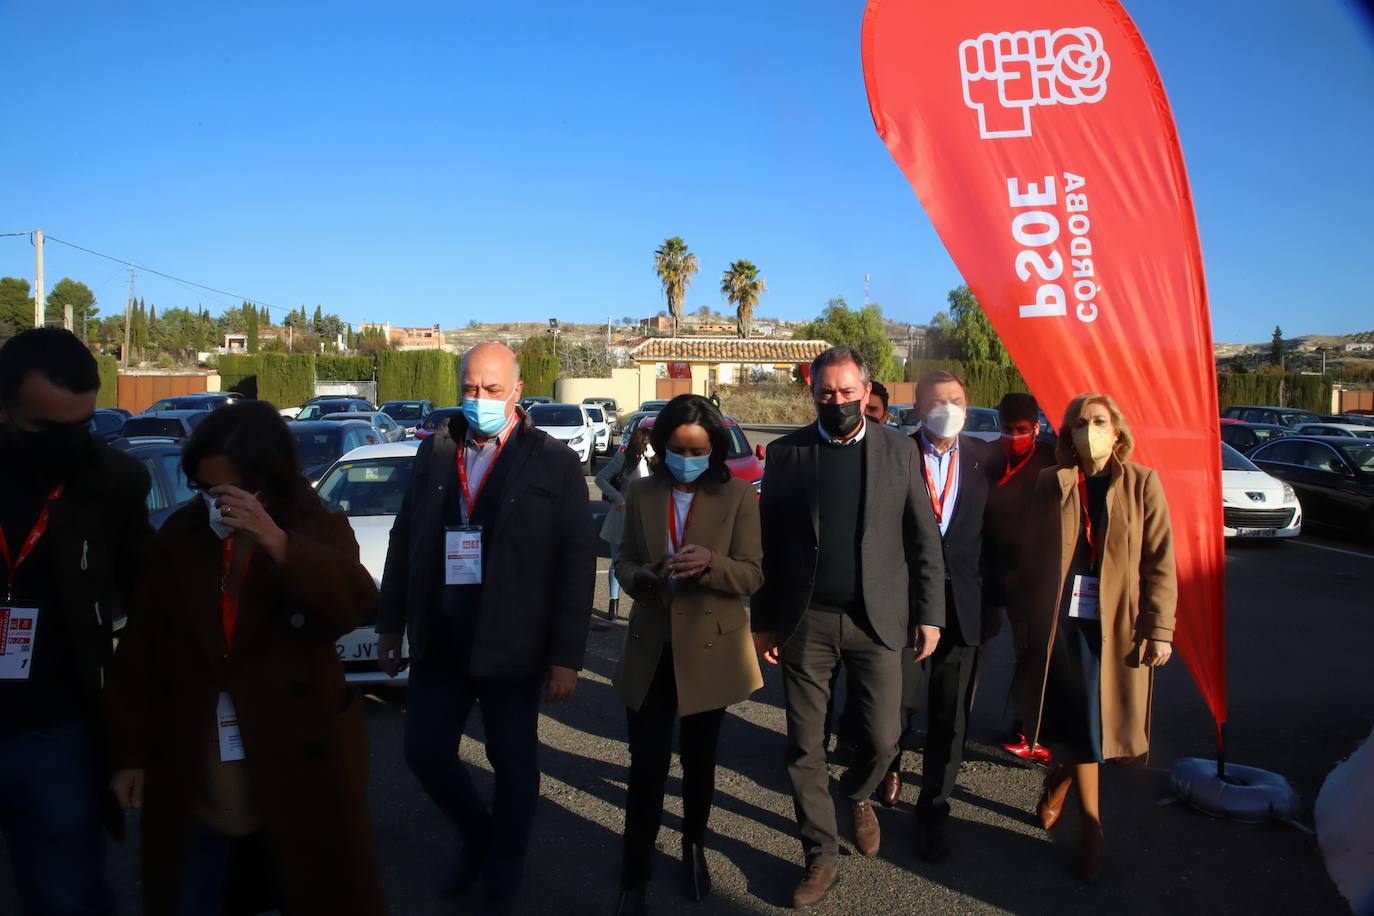 El congreso provincial del PSOE de Córdoba, en imágenes